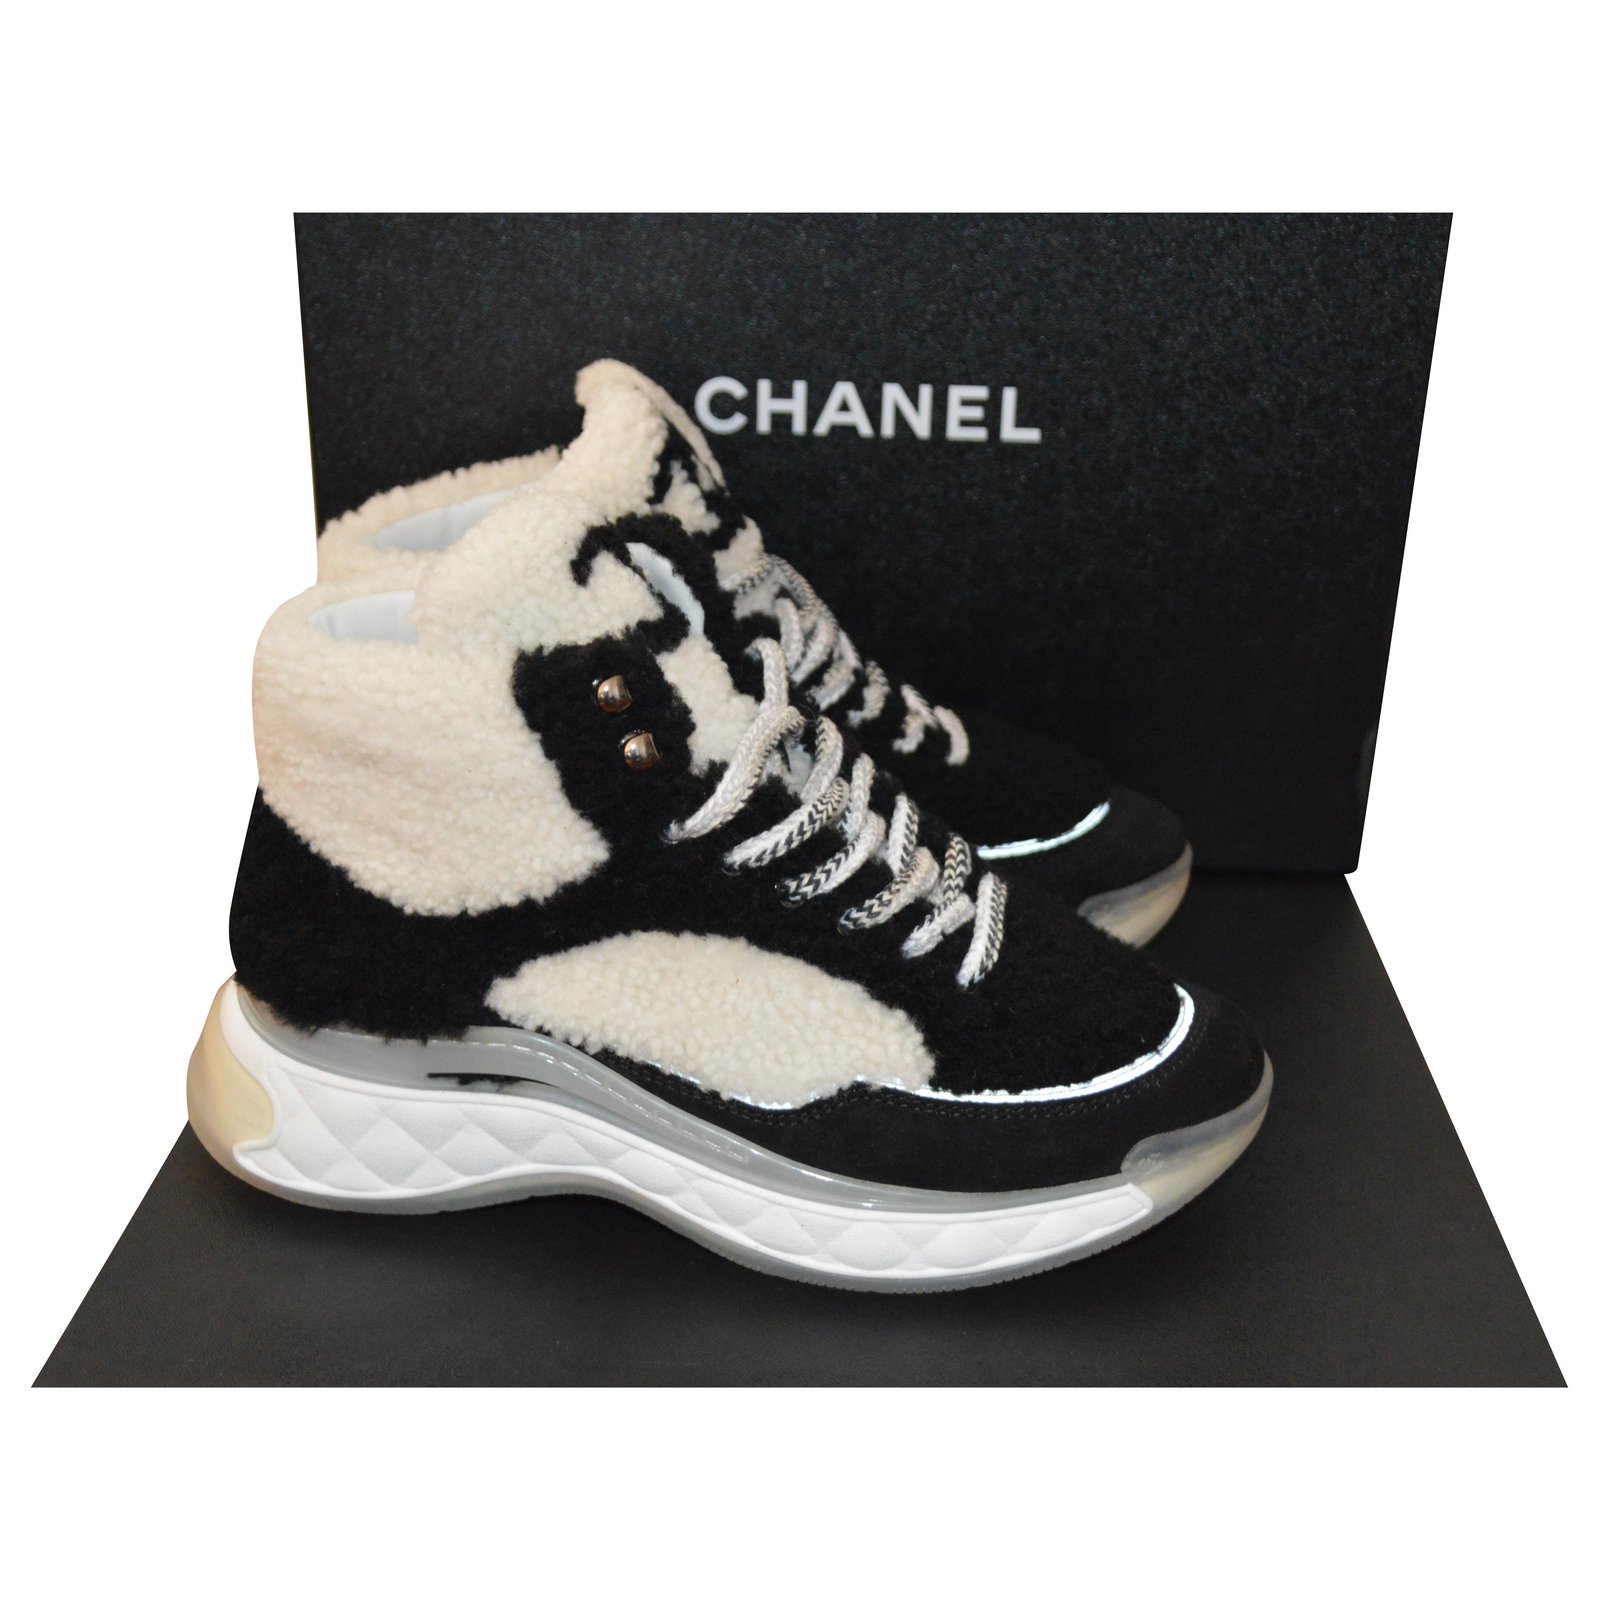 Chanel White Sneakers  Sneakers, White sneakers, Chanel sneakers